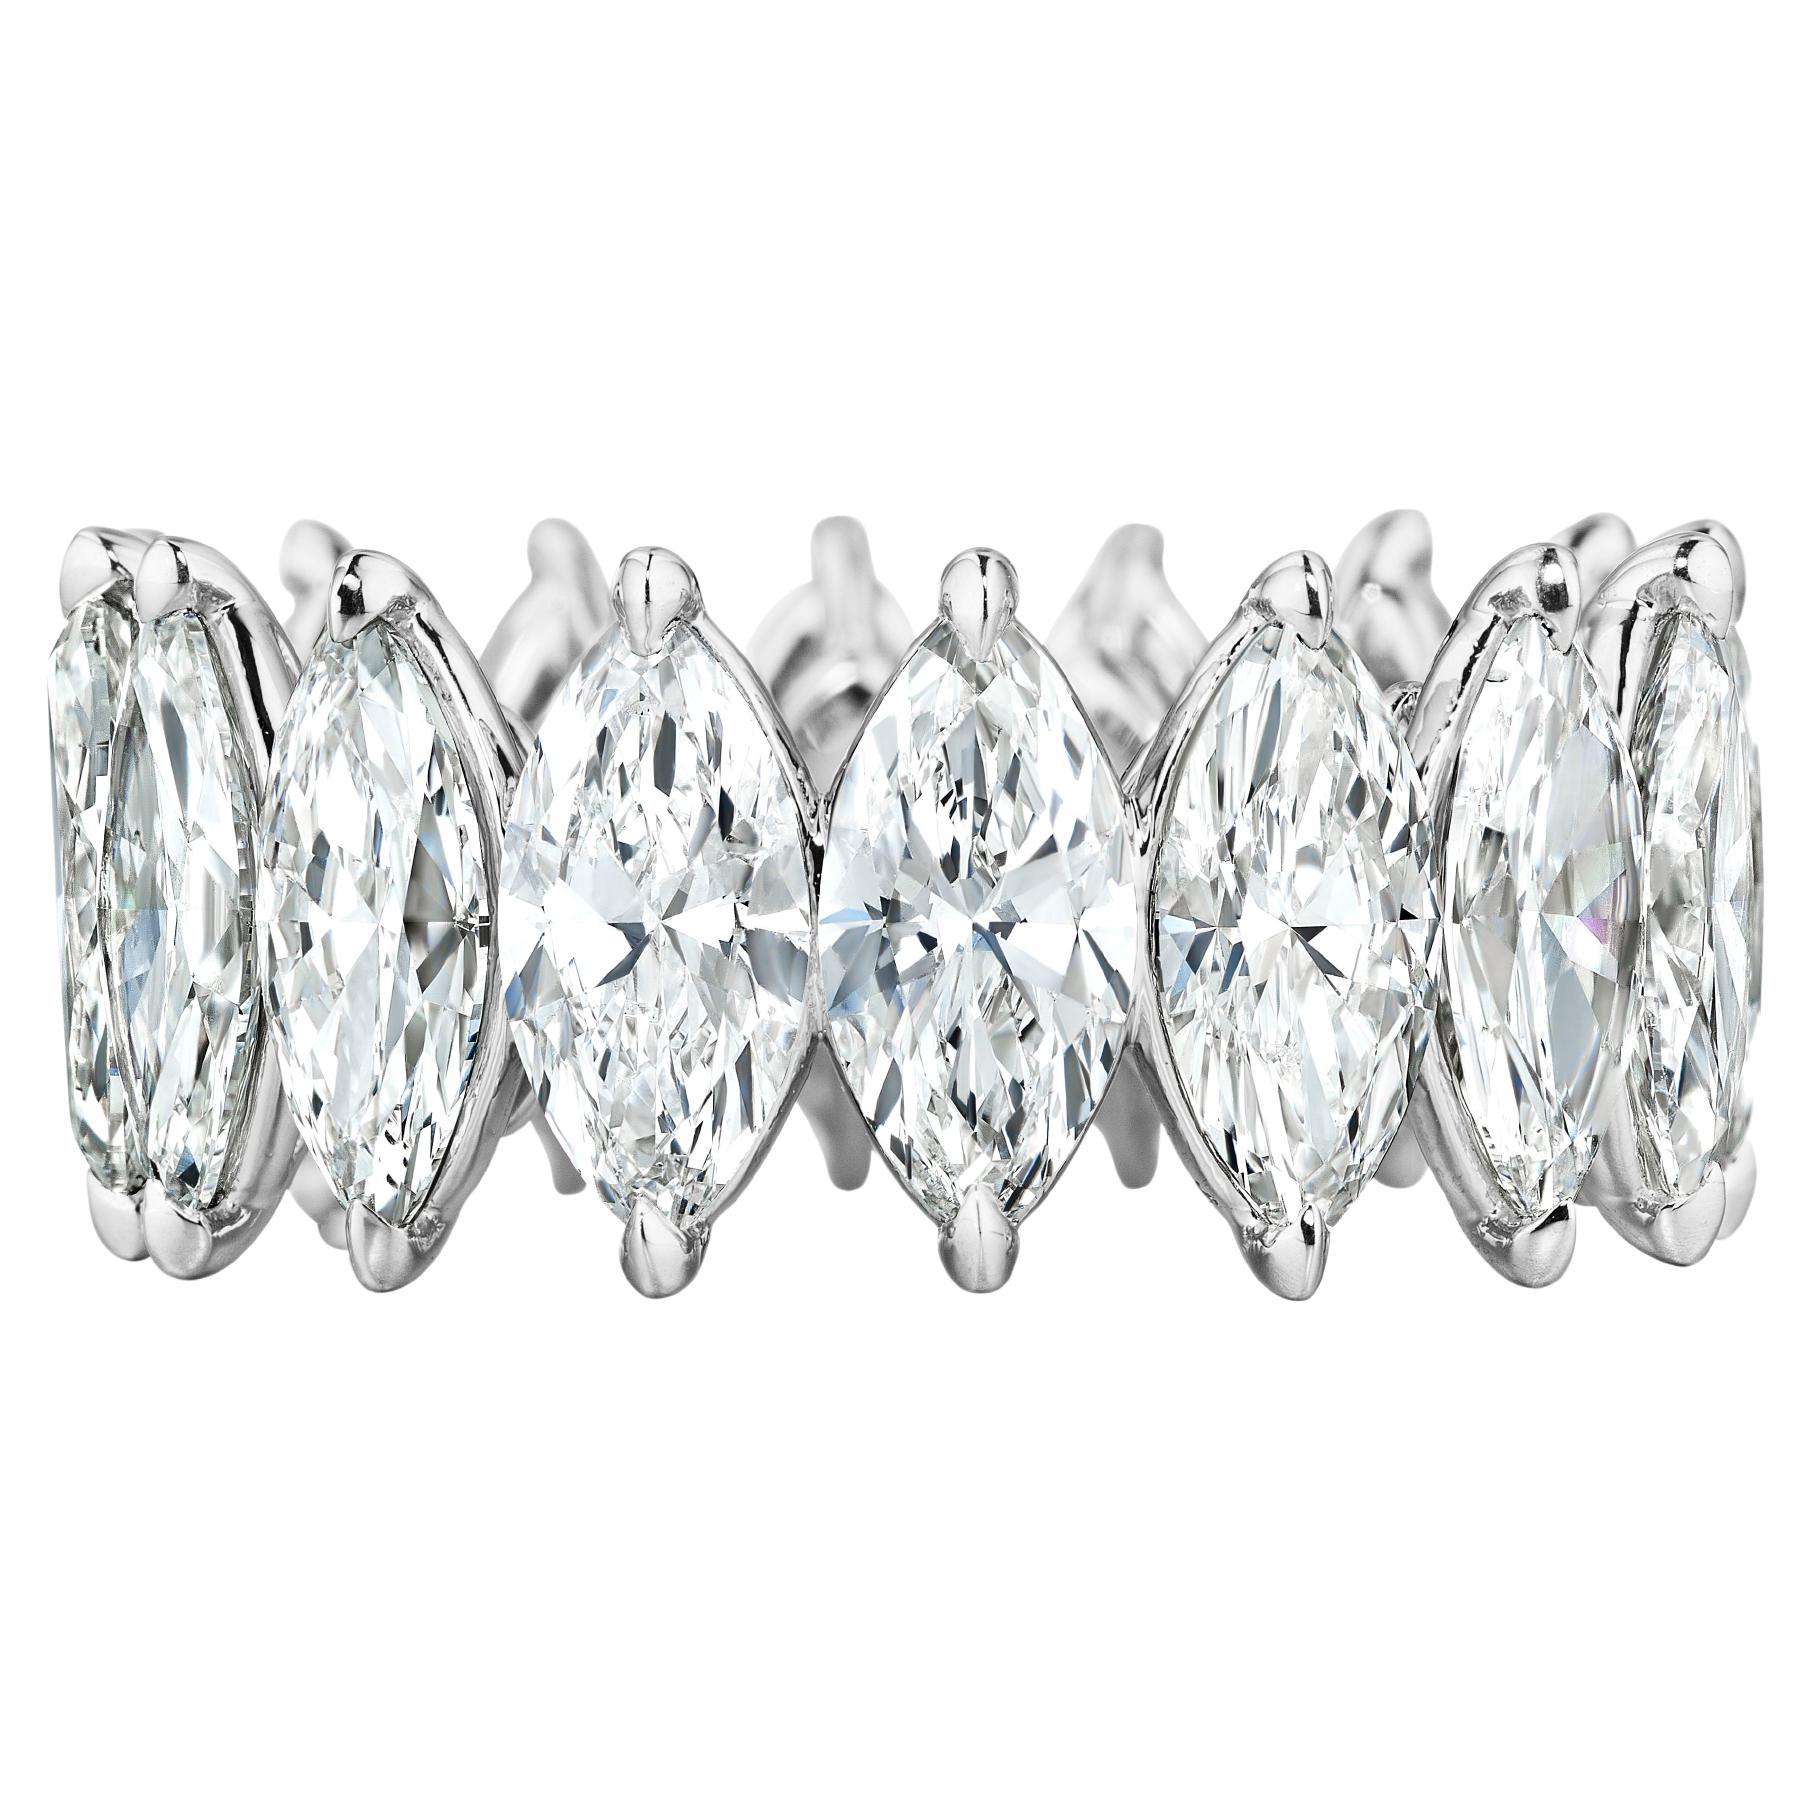 16 Diamants taille marquise parfaitement assortis et allongés pesant un total de 8,02 carats.
Chaque pierre pèse entre 0,50ct+
Les pierres sont de couleur DE et de clarté SI.
Chaque pierre est certifiée par le GIA.
En platine.
Taille 6.